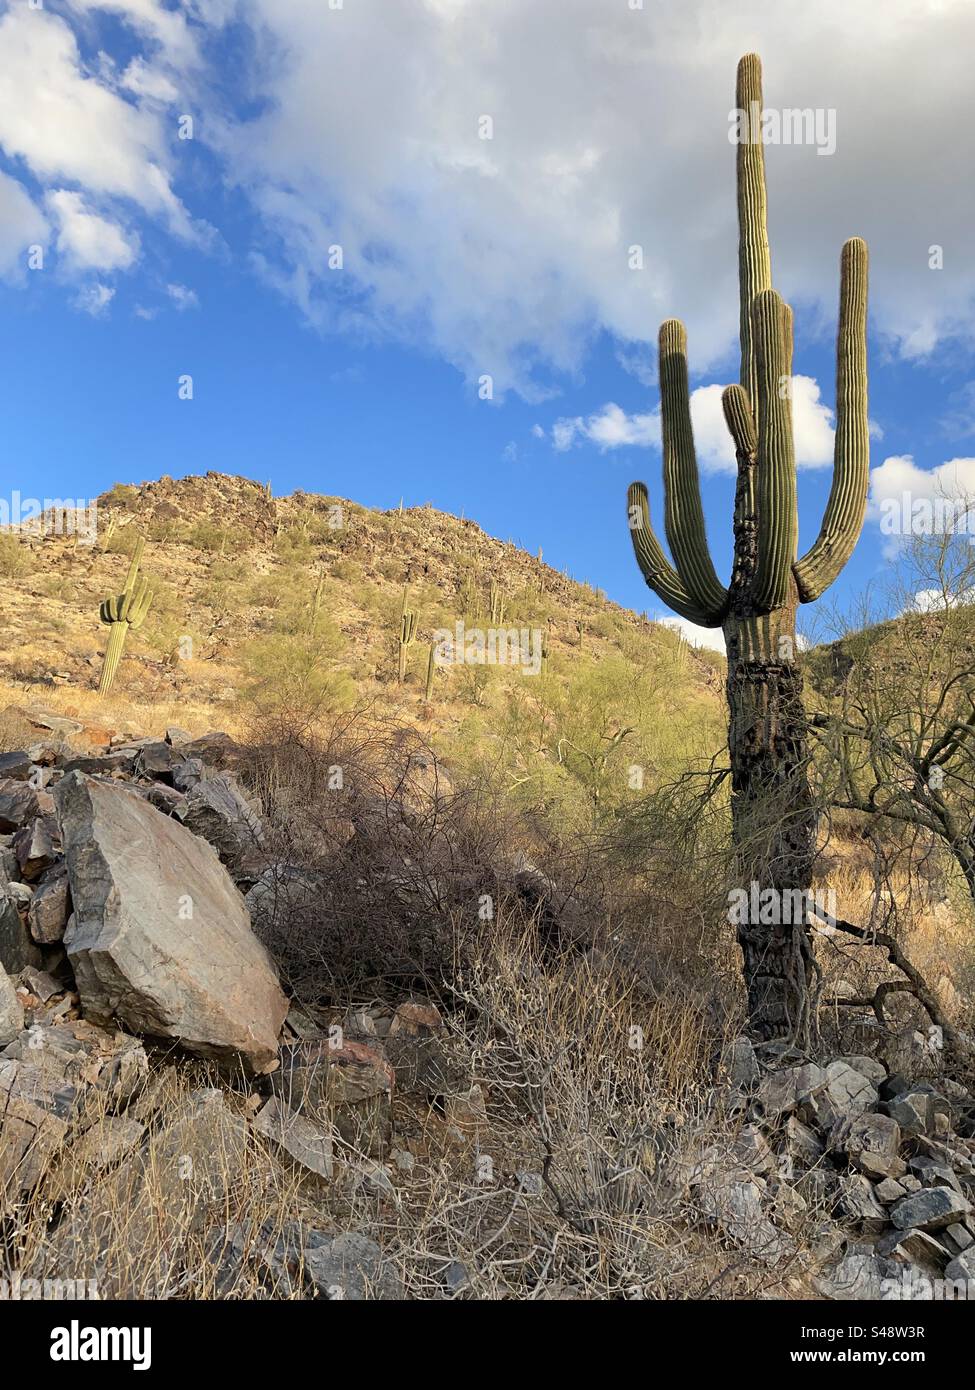 Ciel bleu et nuages moelleux, cactus Saguaro, affleurements rocheux, désert de Sonoran, réserve des montagnes Phoenix, Arizona Banque D'Images